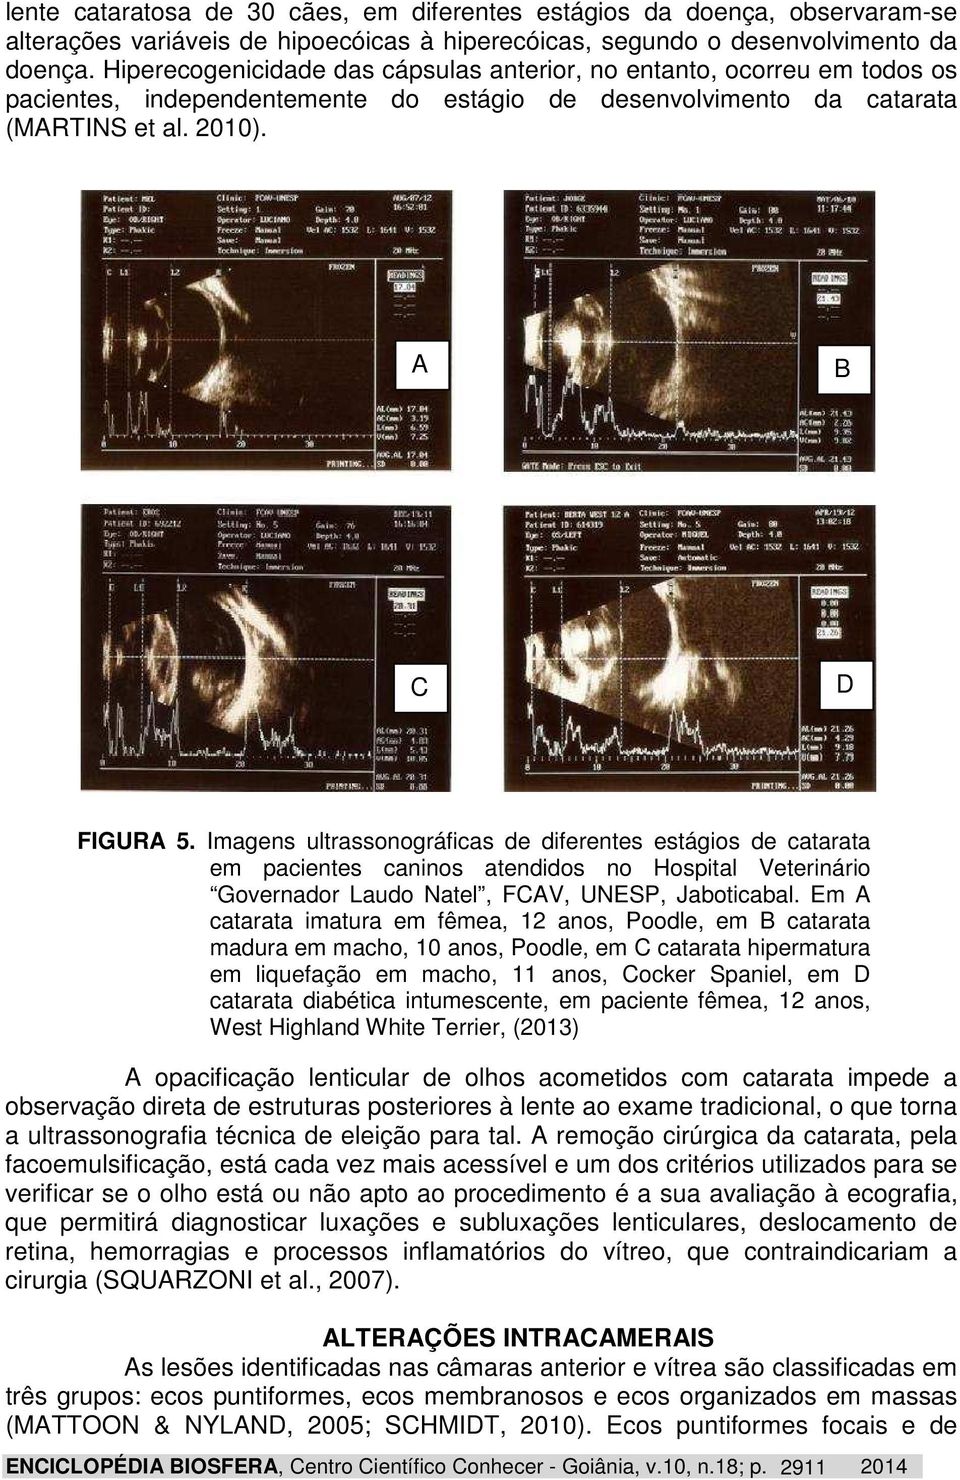 Imagens ultrassonográficas de diferentes estágios de catarata em pacientes caninos atendidos no Hospital Veterinário Governador Laudo Natel, FCAV, UNESP, Jaboticabal.